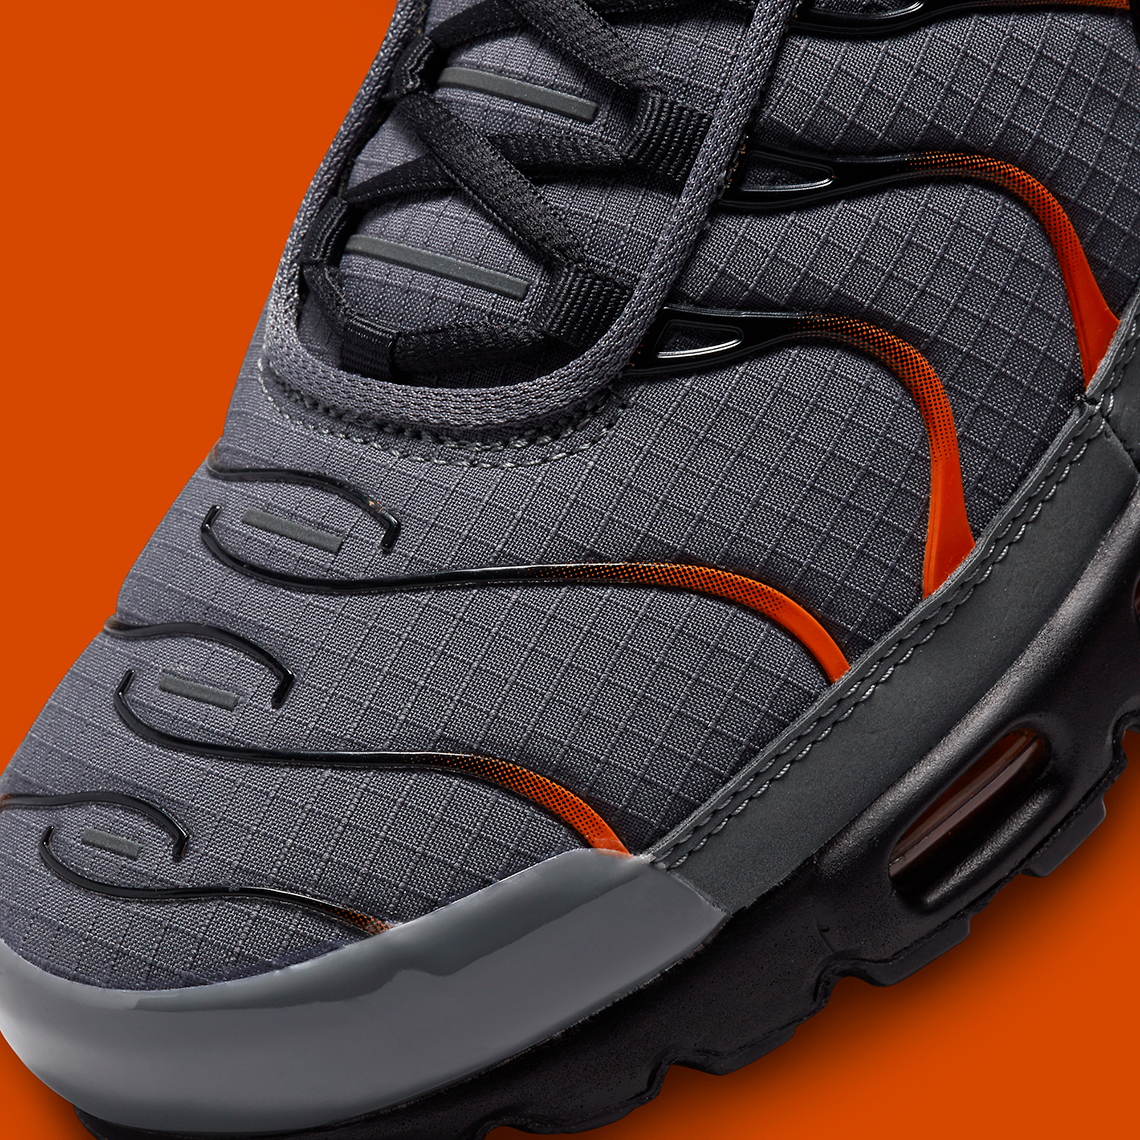 Nike Air Max Plus Grey Orange Black FB3358-001 | SneakerNews.com